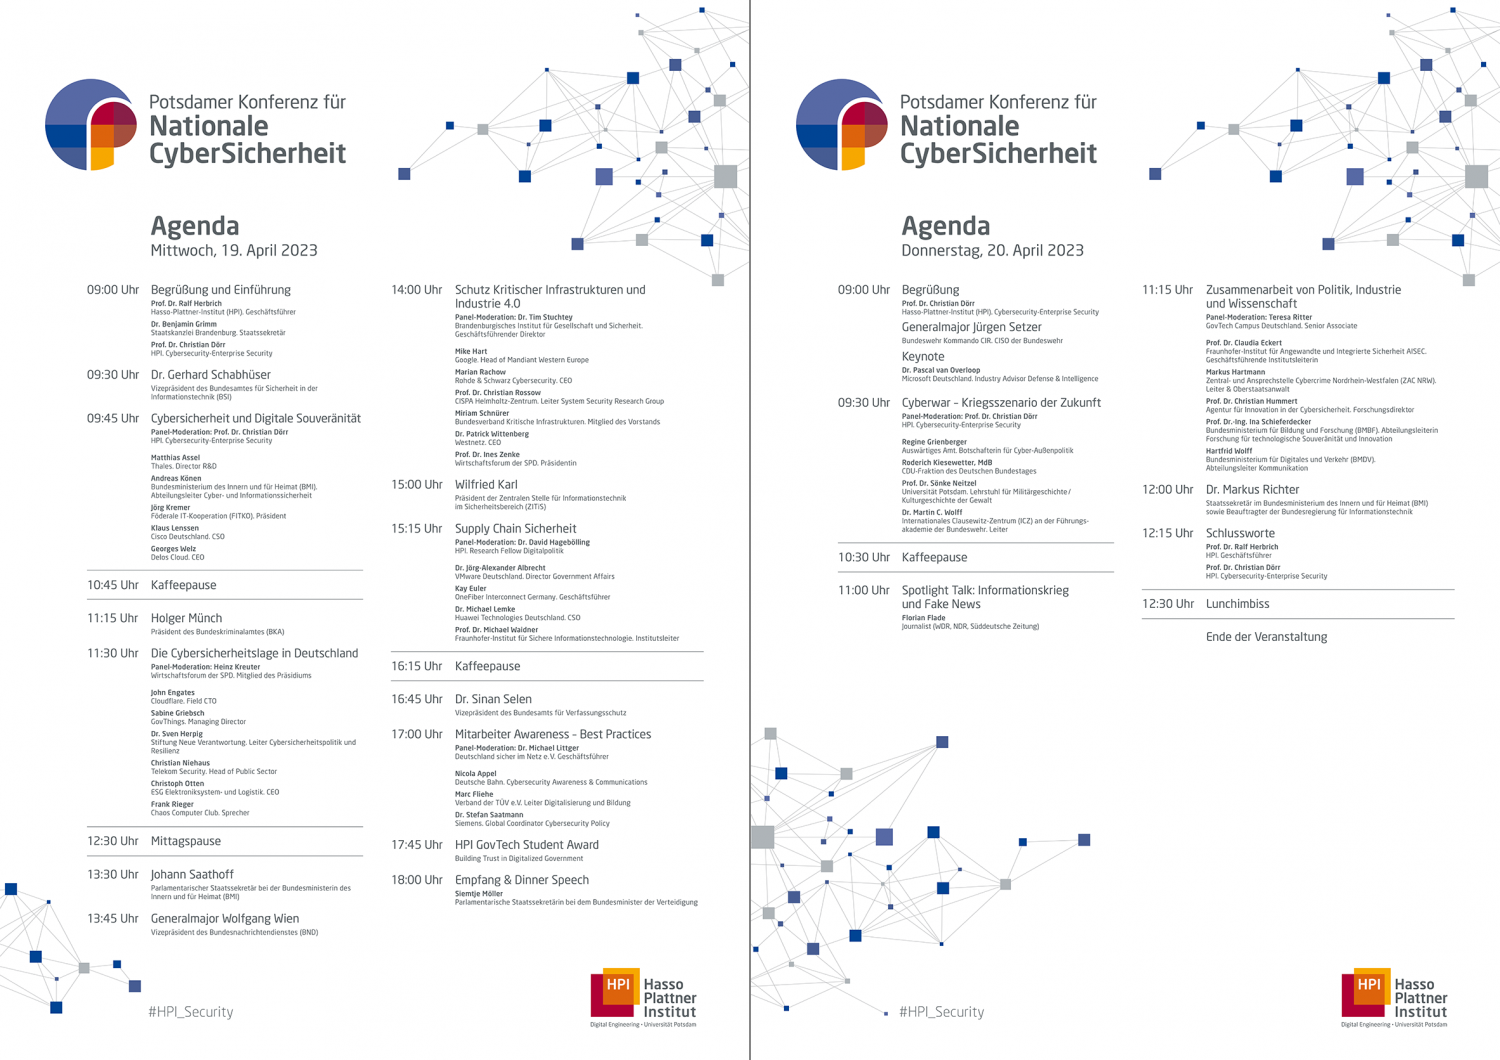 Agenda der Potsdamer Konferenz für Nationale CyberSicherheit